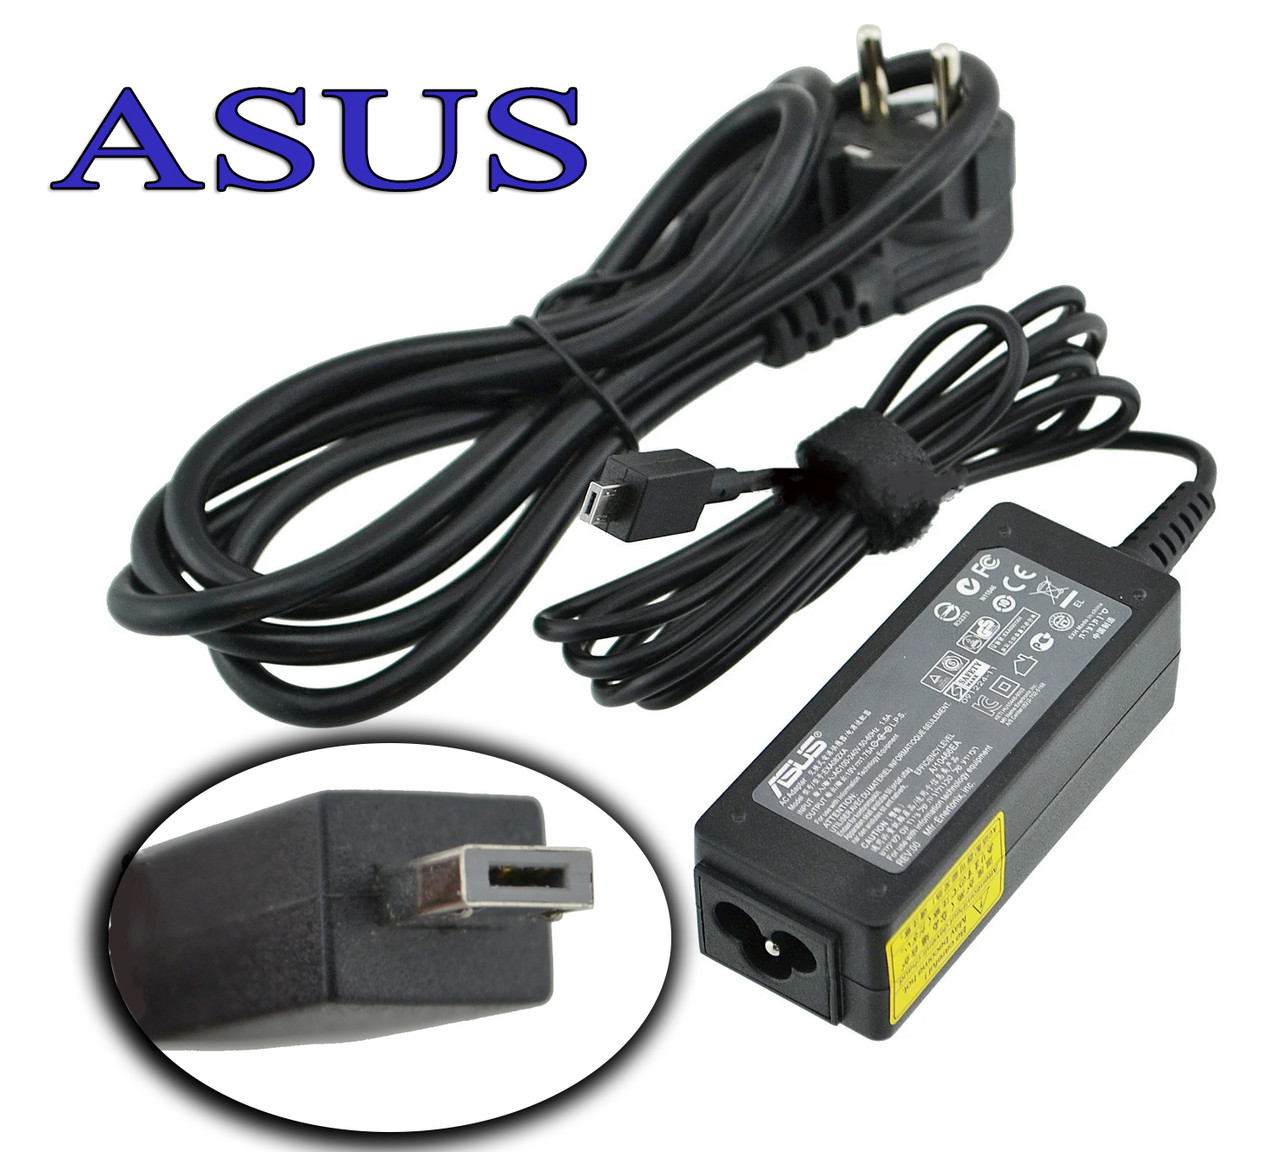 Зарядний пристрій Asus 19V 1.75A 33W X205T M-plug прямокутний, для ноутбука, зарядка, зарядне